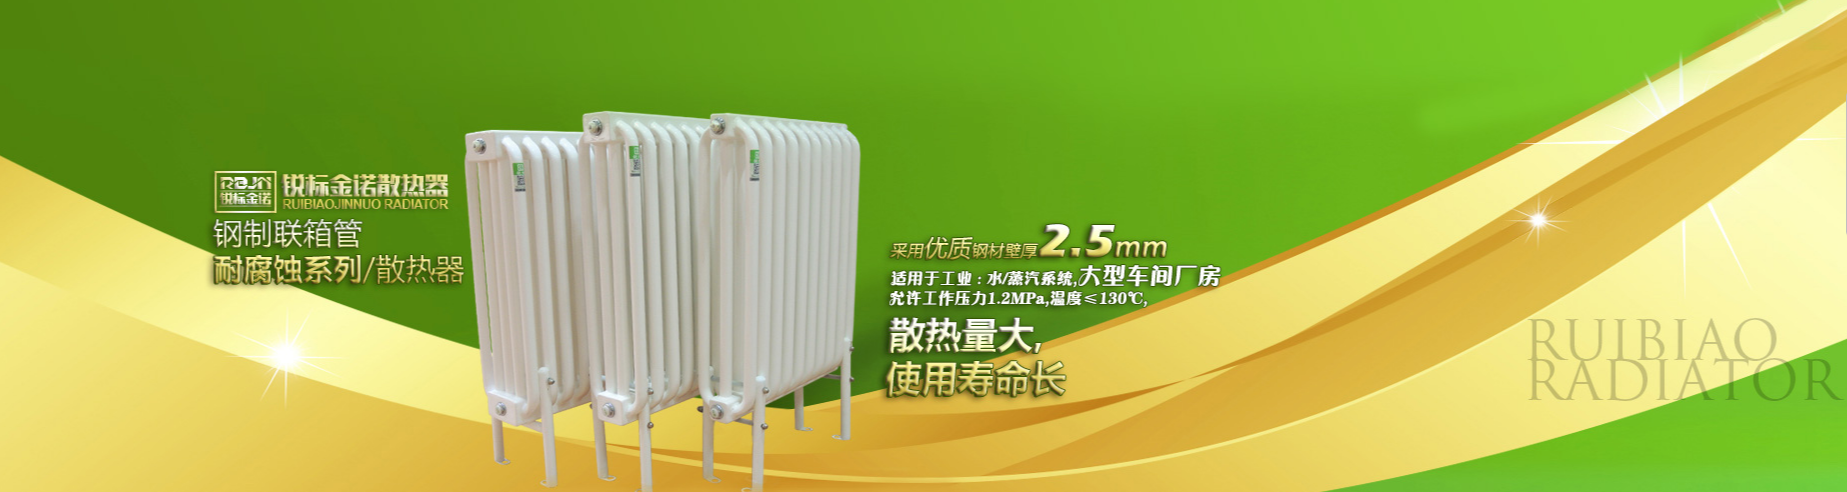 北京锐标金诺暖通设备有限公司